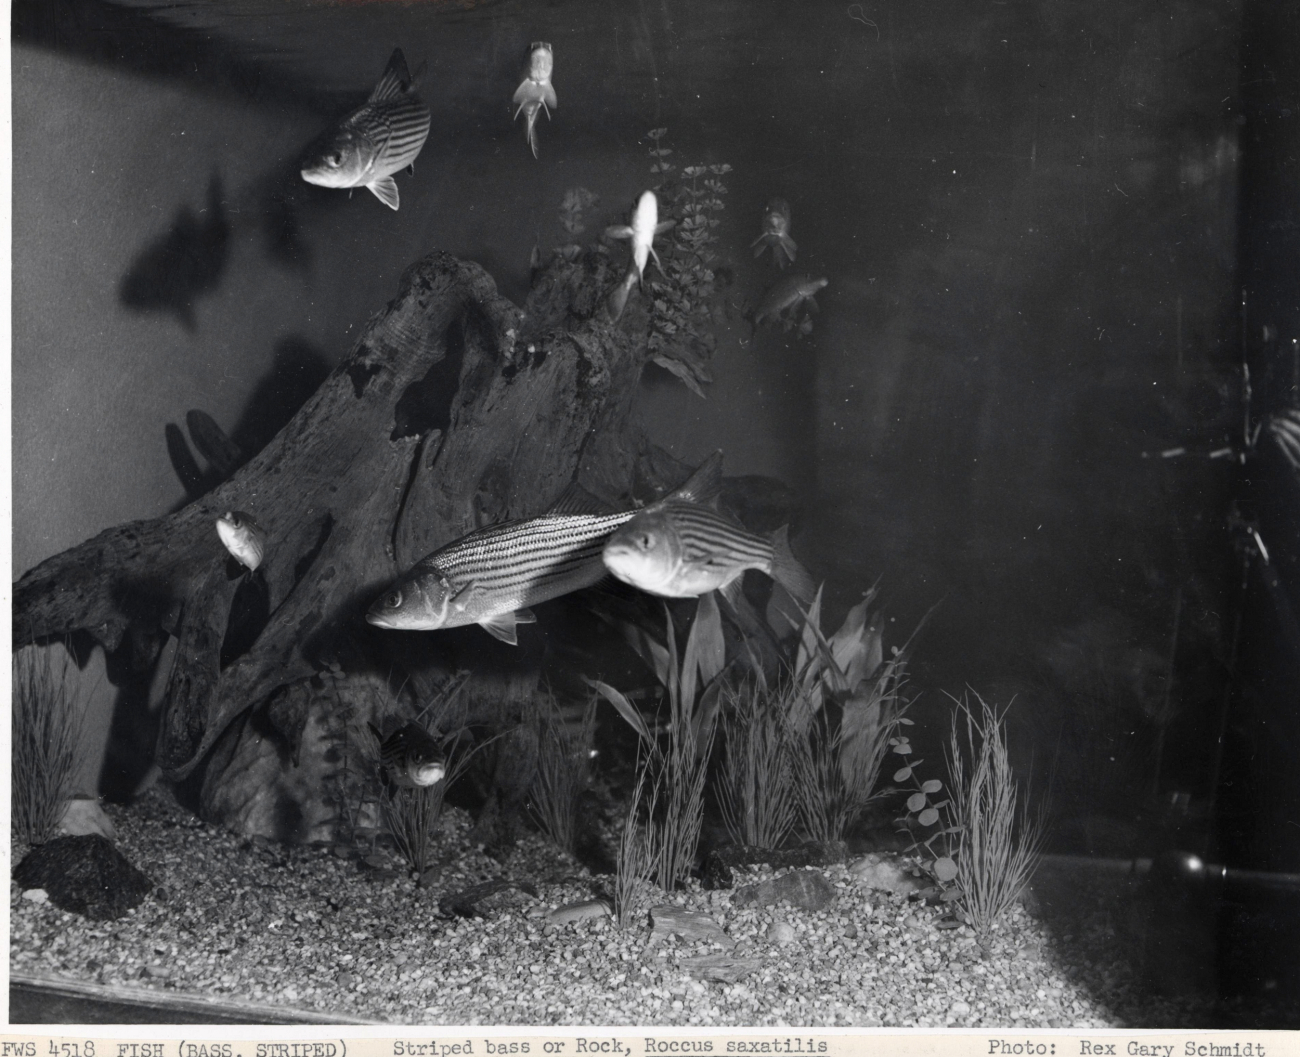 Striped bass, Roccus saxatilis, in an aquarium